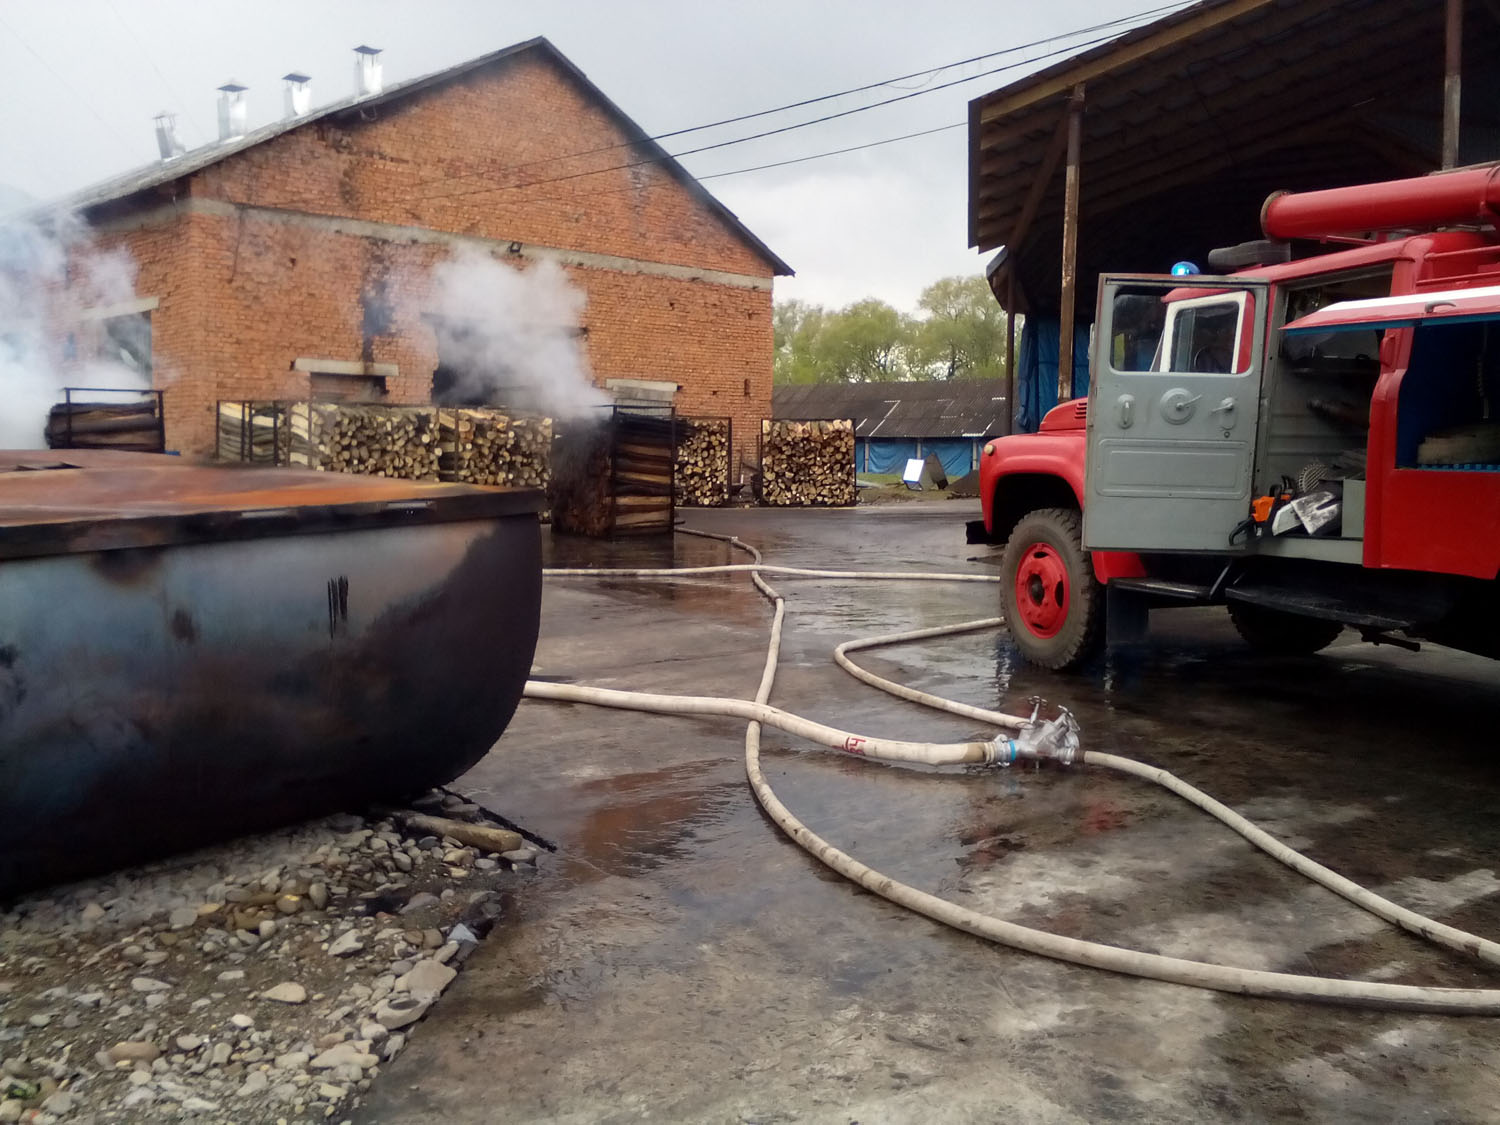 23 квітня о 15:50  поступило повідомлення про пожежу на підприємстві, що спеціалізується на виготовленні деревного вугілля та розташоване на вул. Будівельників у Перечині.